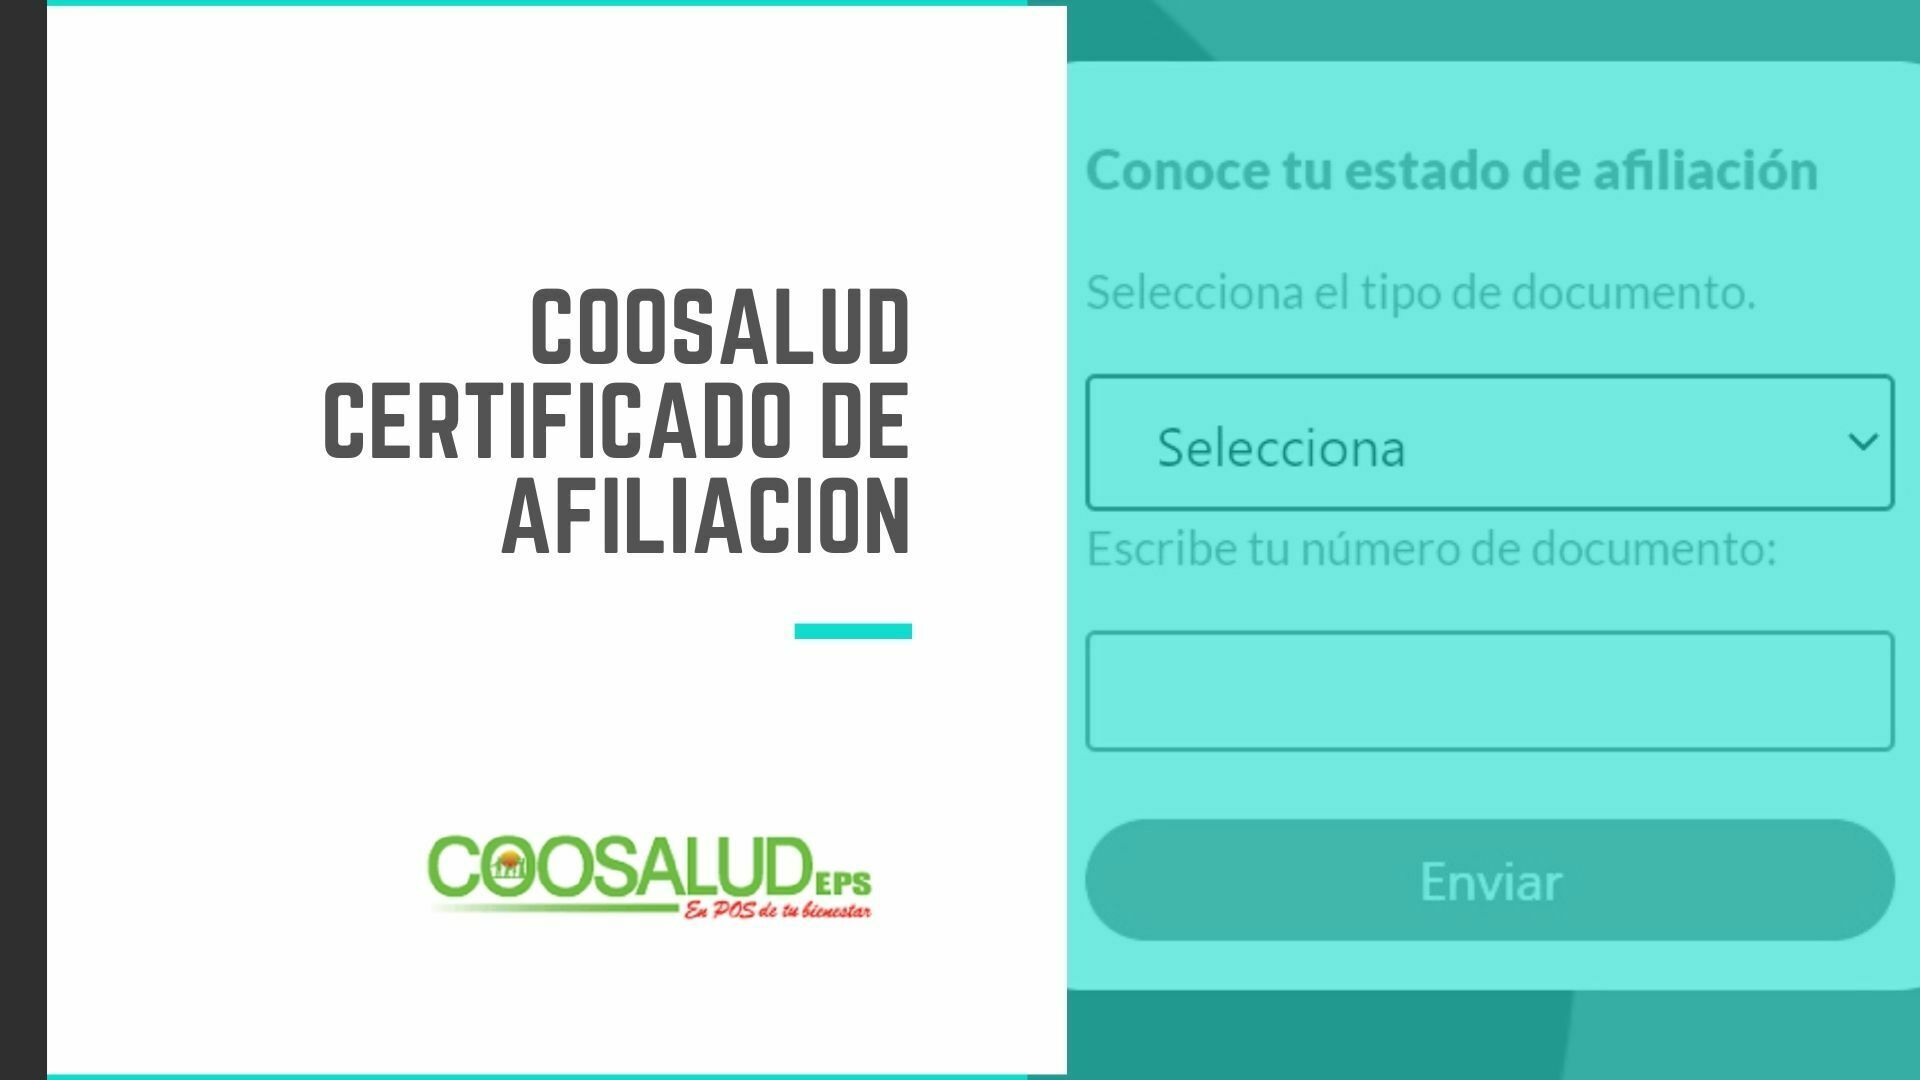 Coosalud Certificado de Afiliación